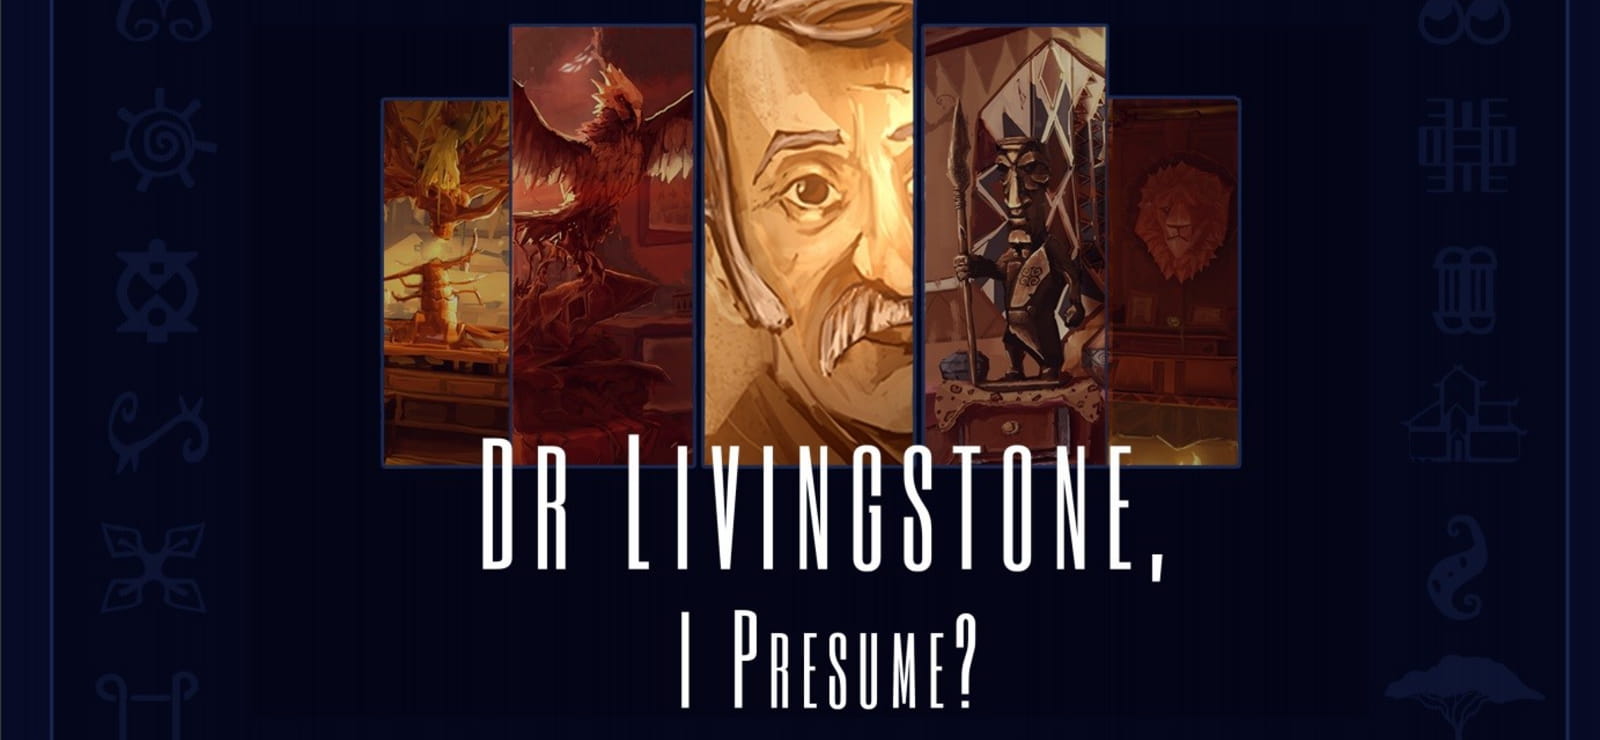 Dr Livingstone, I Presume? - Reversed Escape Room - Artbook